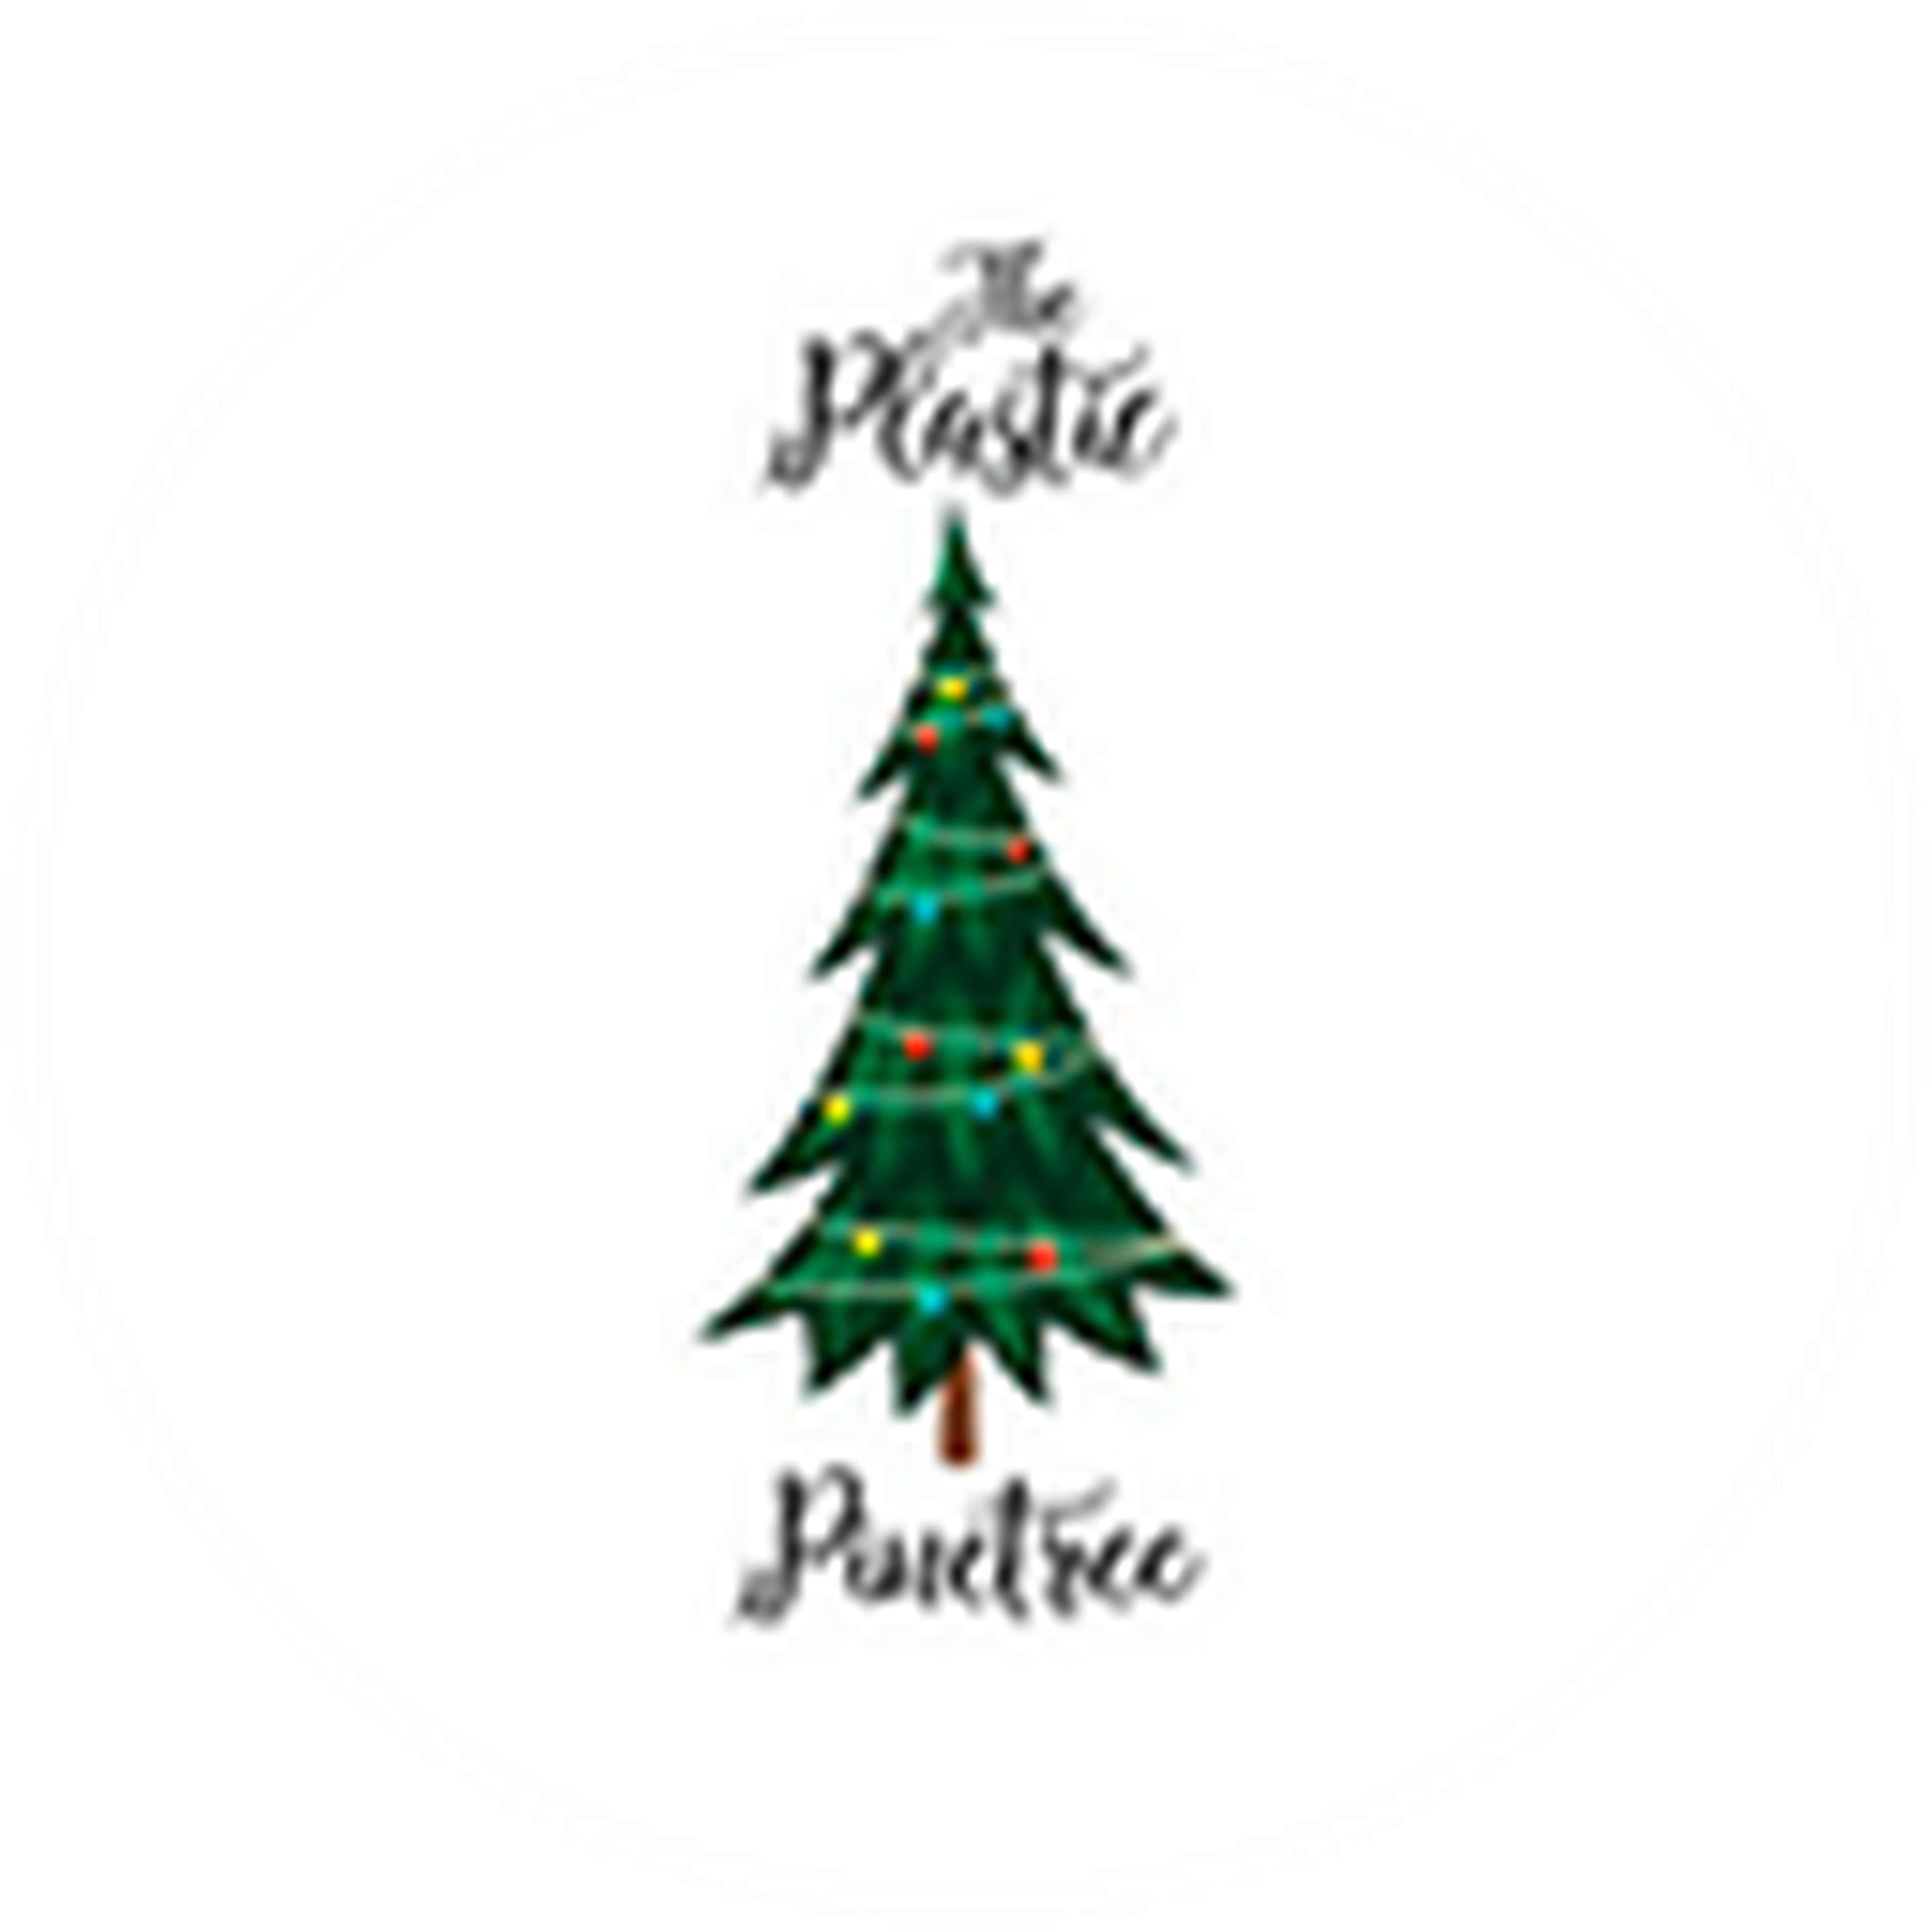 The Plastic Pine Tree